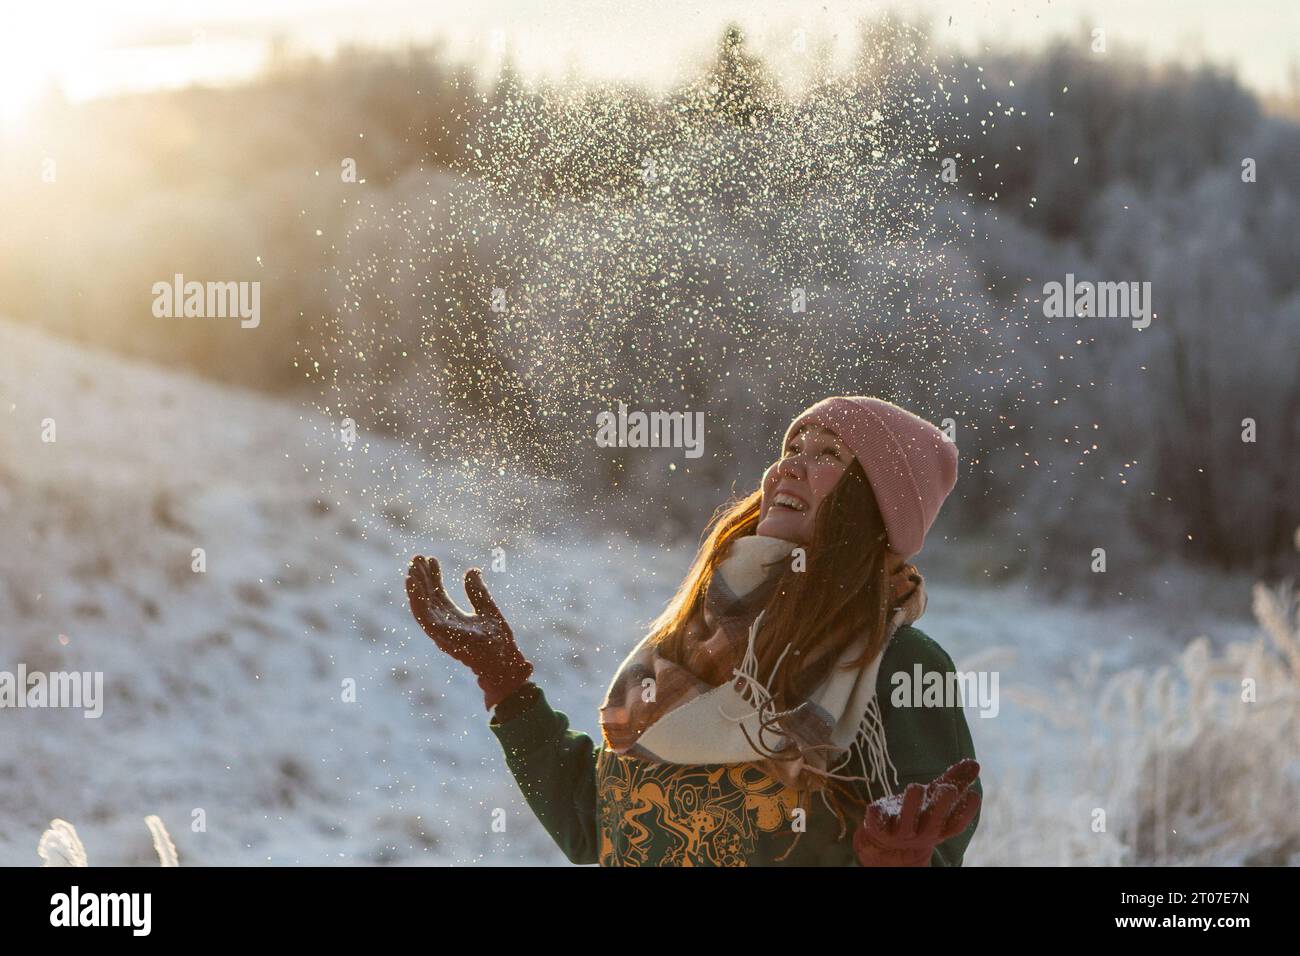 Porträt des glücklichen schönen Mädchens, der jungen freudigen positiven Frau, die mit Schnee, Schneeflocken, Spaß im Freien in Winterkleidung, Hut und Schal spielt, lächelnd. Wintersaison, Wetter. Hochwertige Fotos Stockfoto